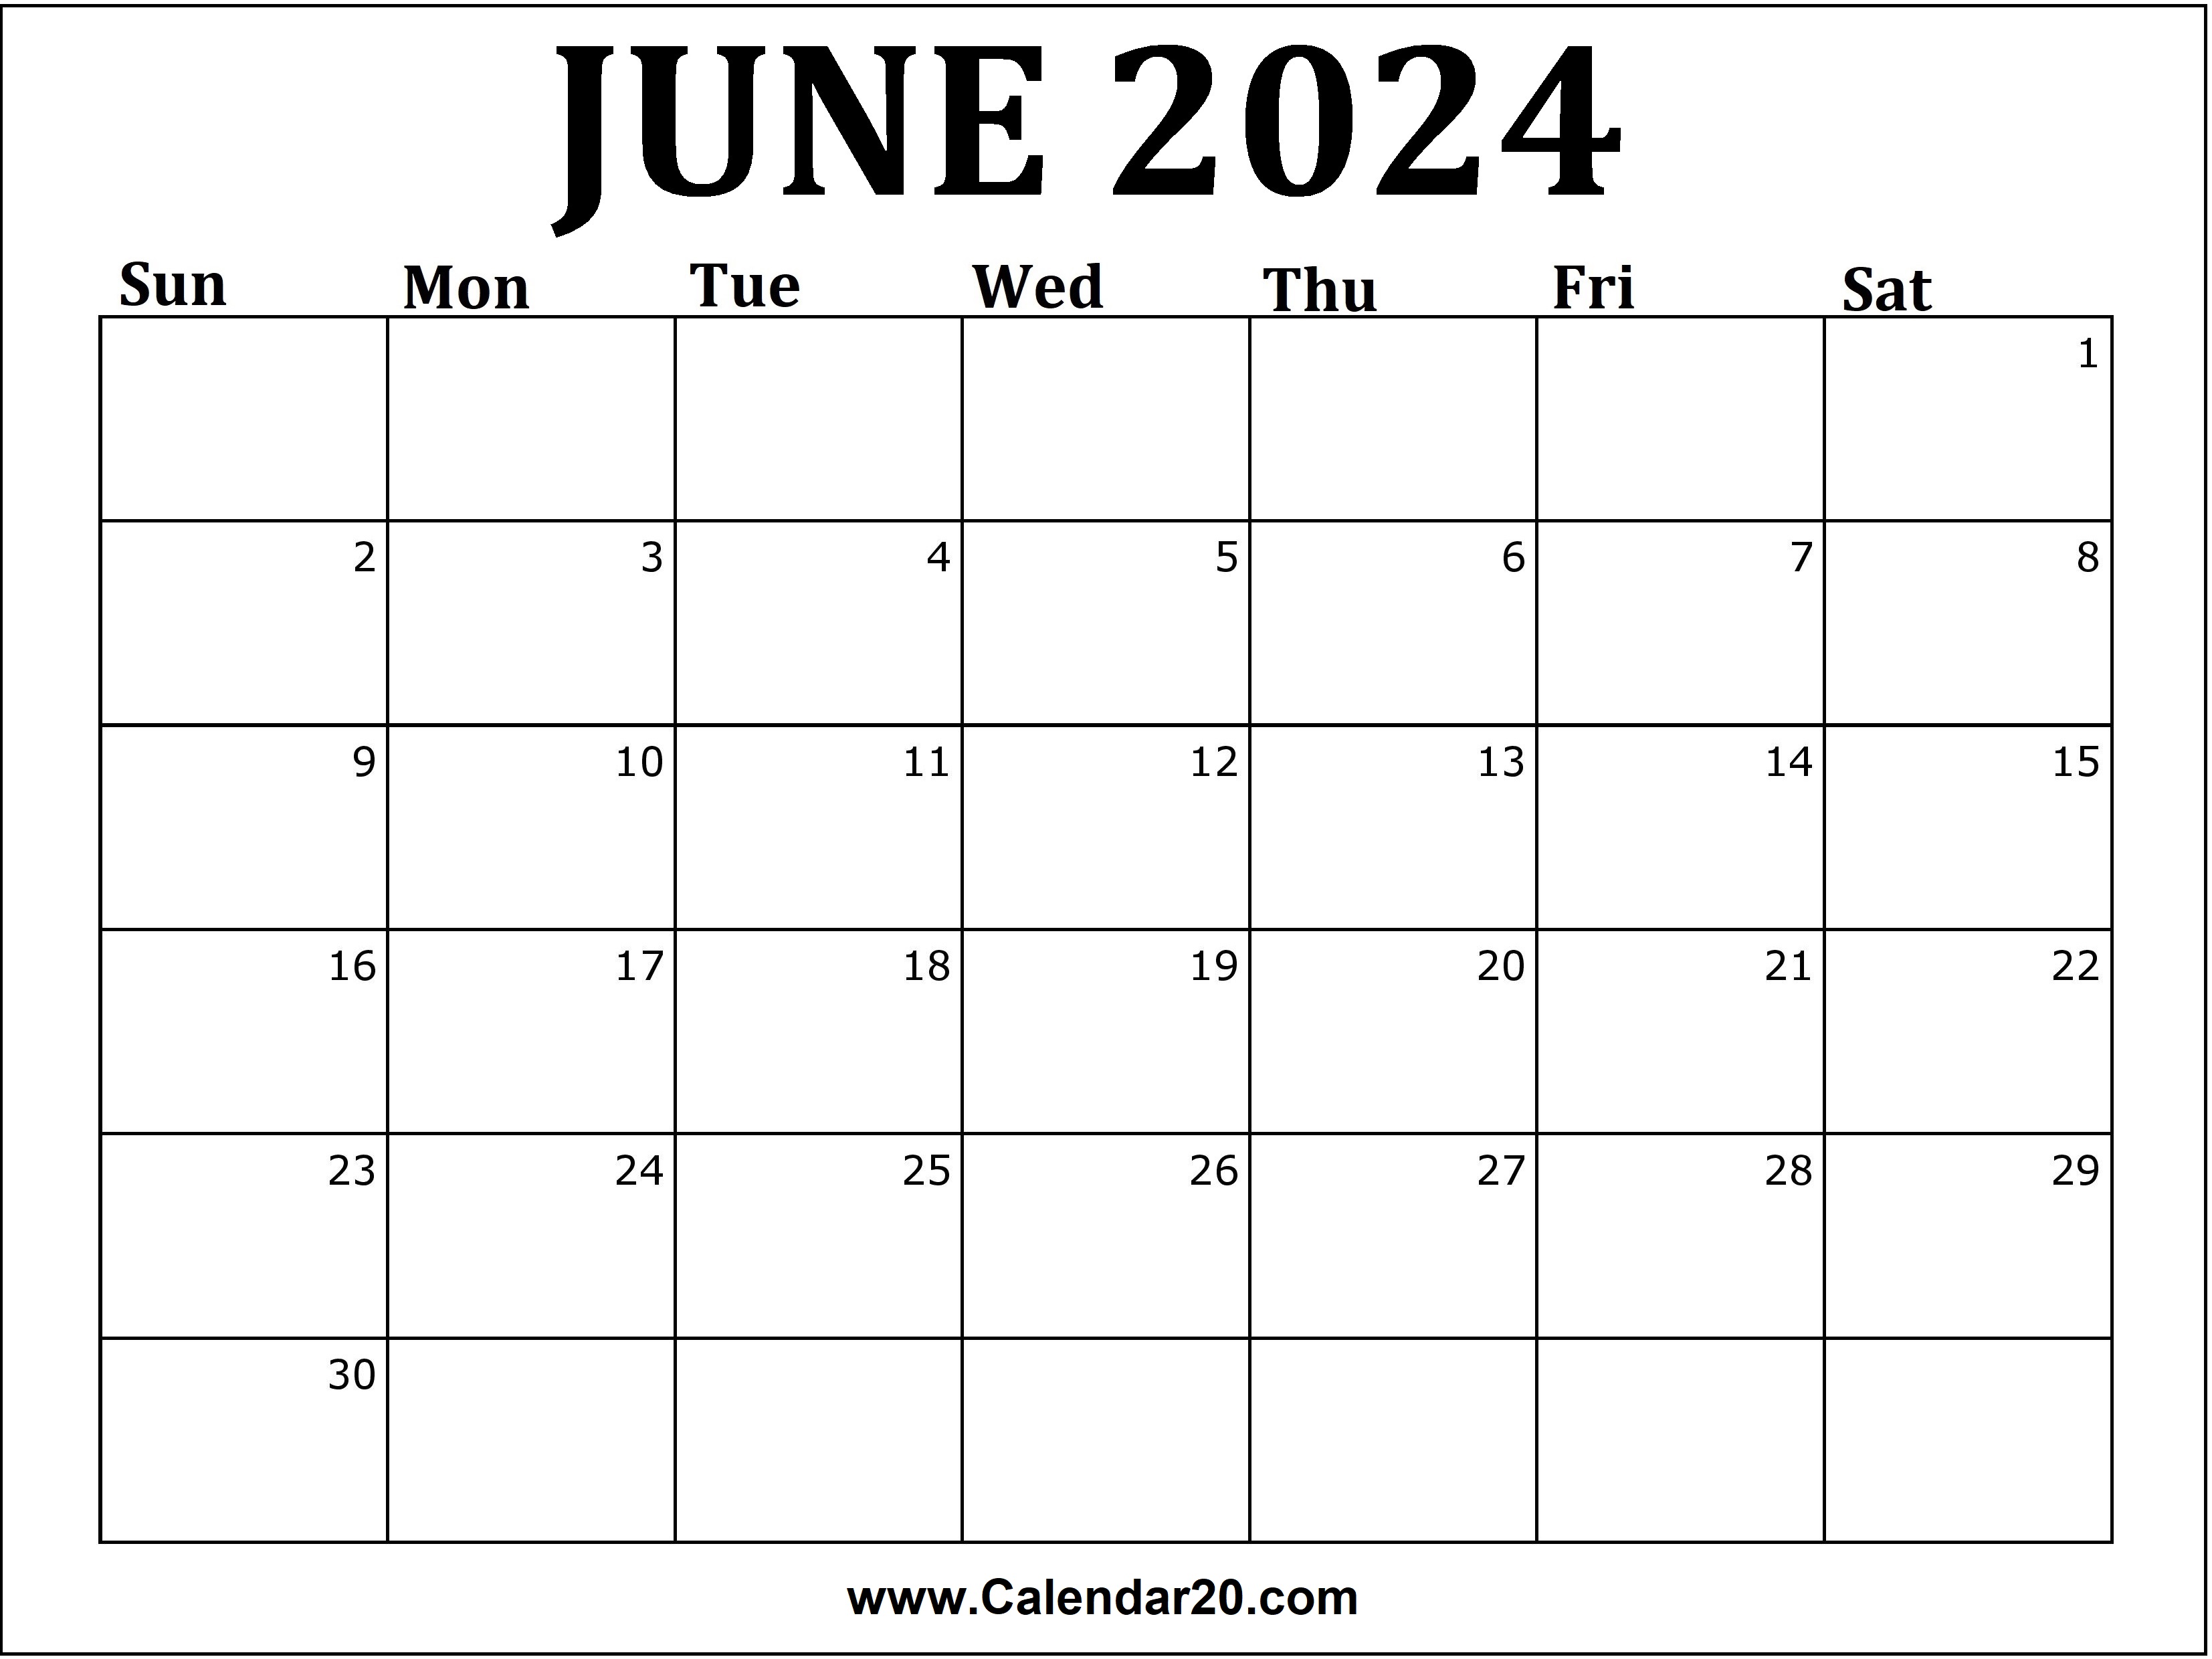 June 2024 Calendar Printable Calendar20 com